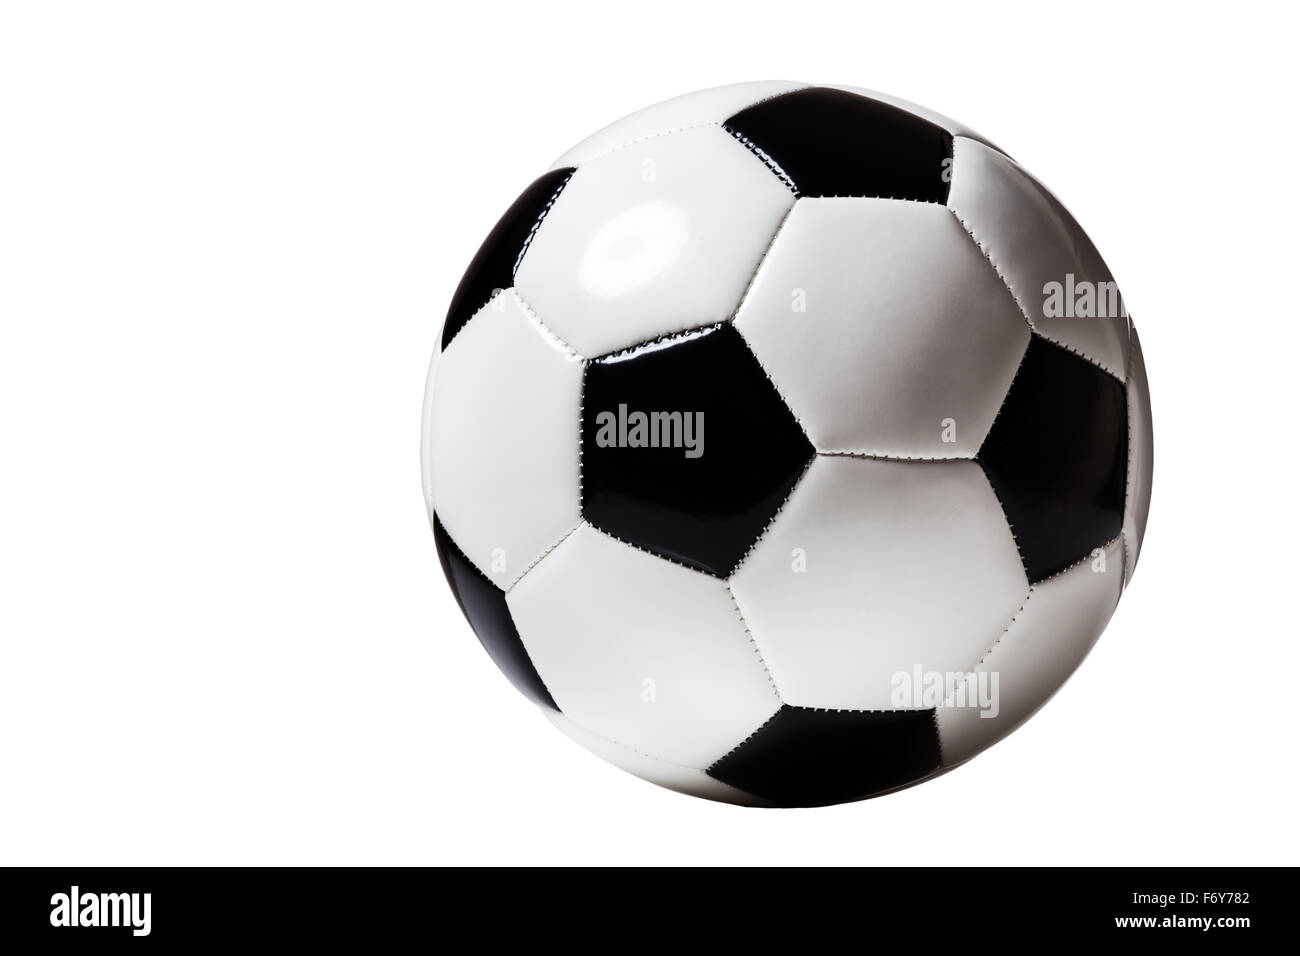 Stillleben-Bild von einem traditionellen schwarzen und weißen Fußball Ausschneiden Stockfoto